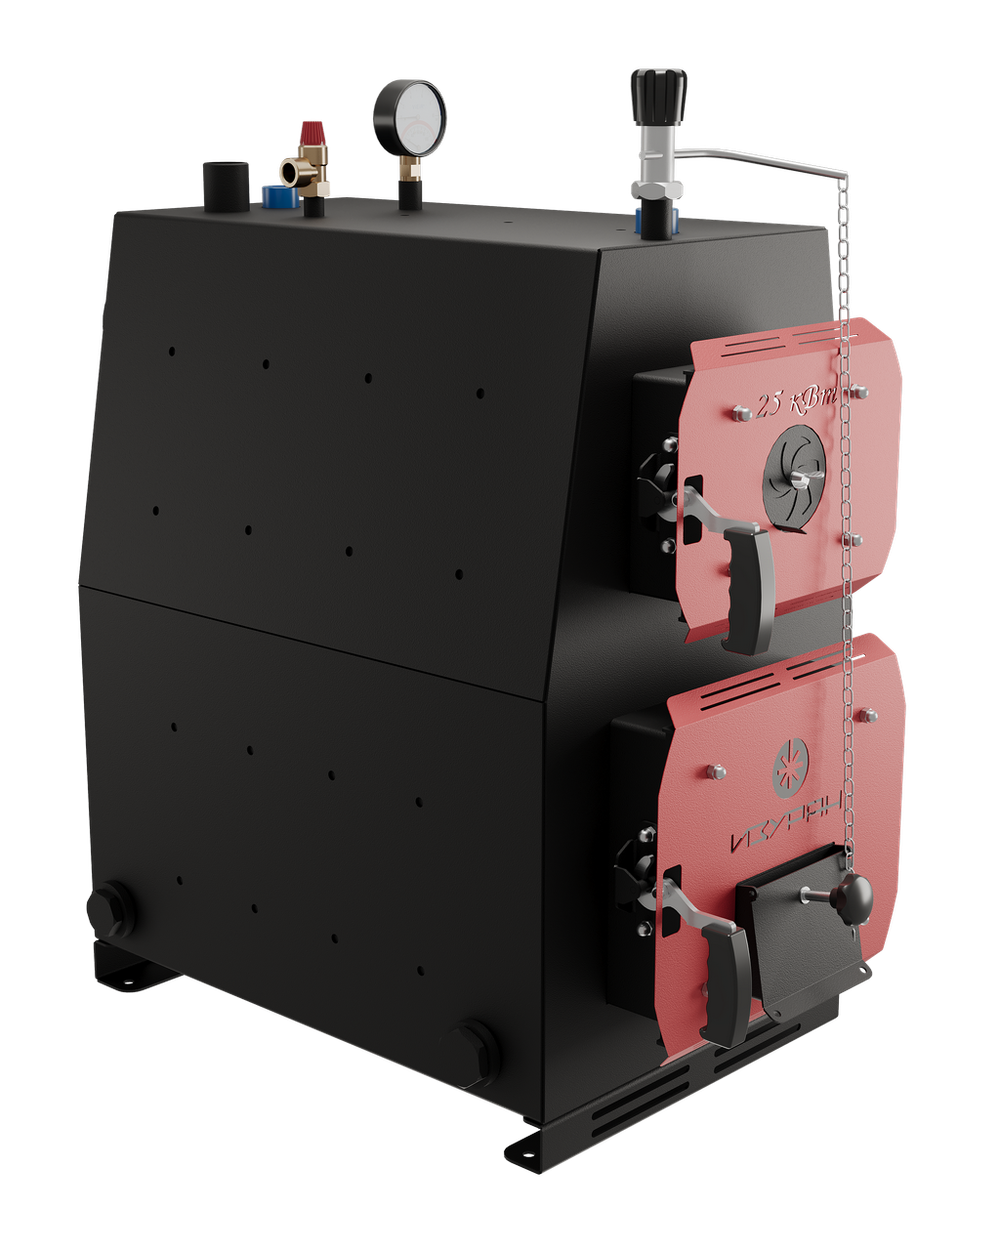 Твердотопливный котел длительного горения Изуран-35 на 35 кВт. Отапливаемое помещение до 945 куб.м. Производитель - Изуран